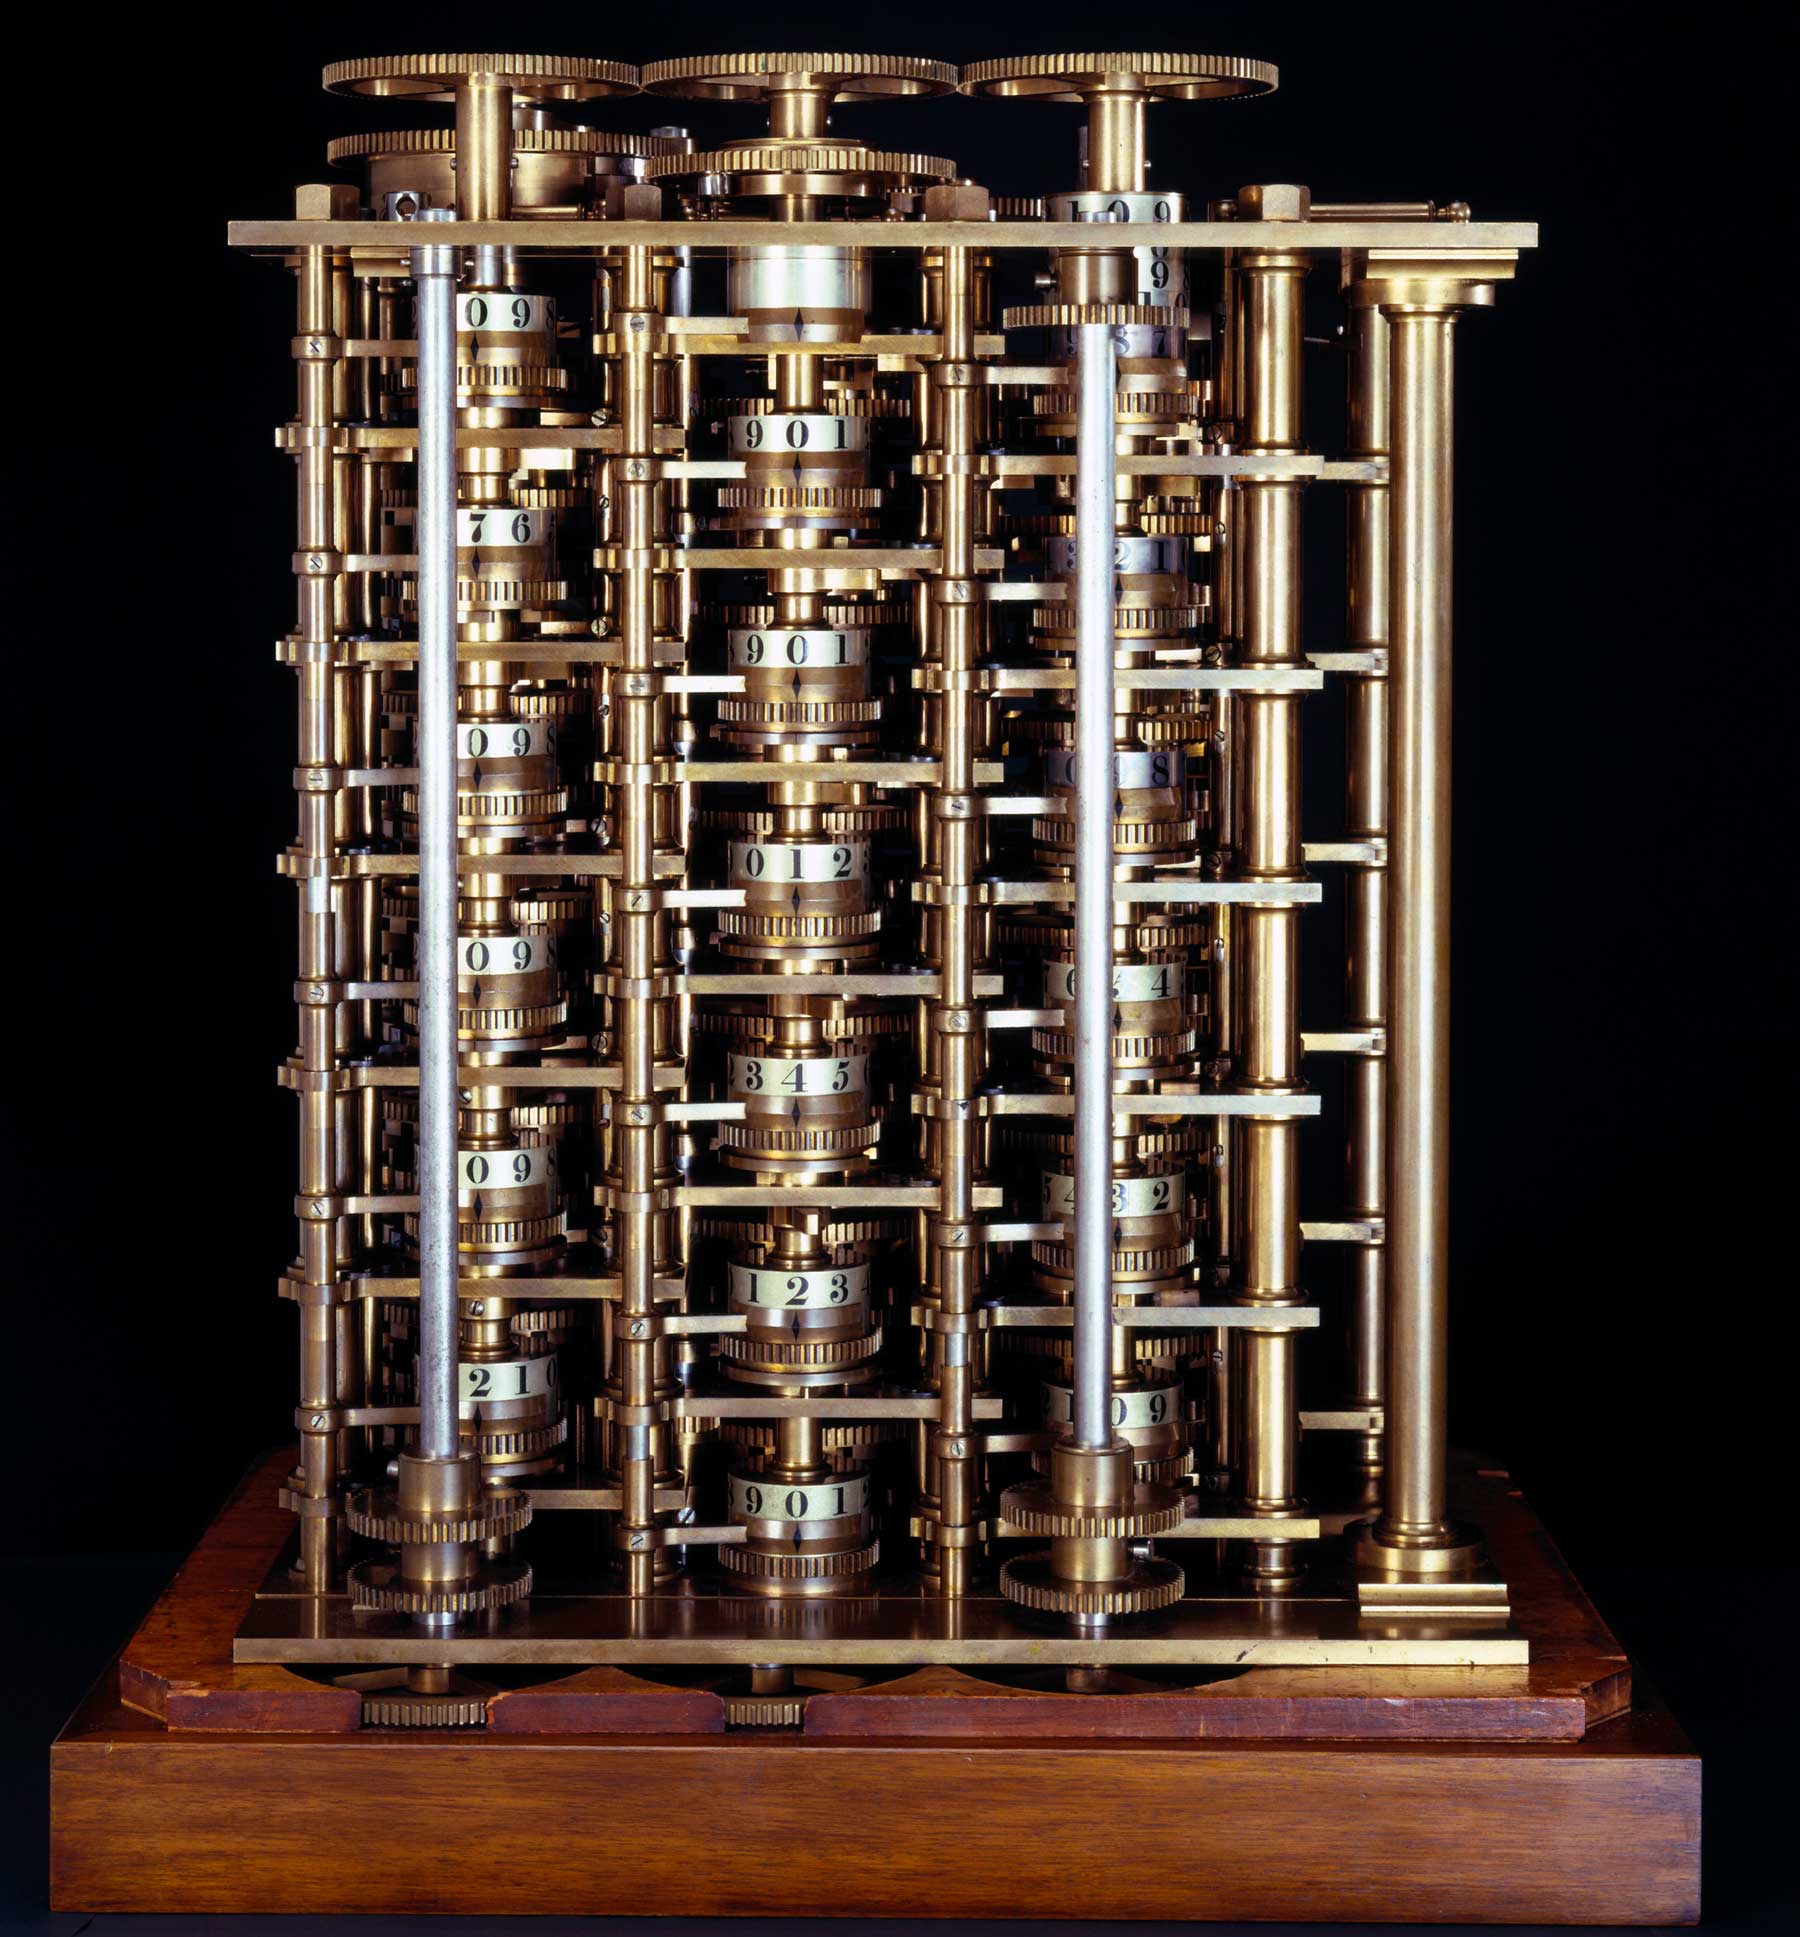 Первая машина бэббиджа. Машина Чарльза Бэббиджа. Разностная машина Чарльза Бэббиджа 1822. Дифференциальная машина Чарльза Бэббиджа.